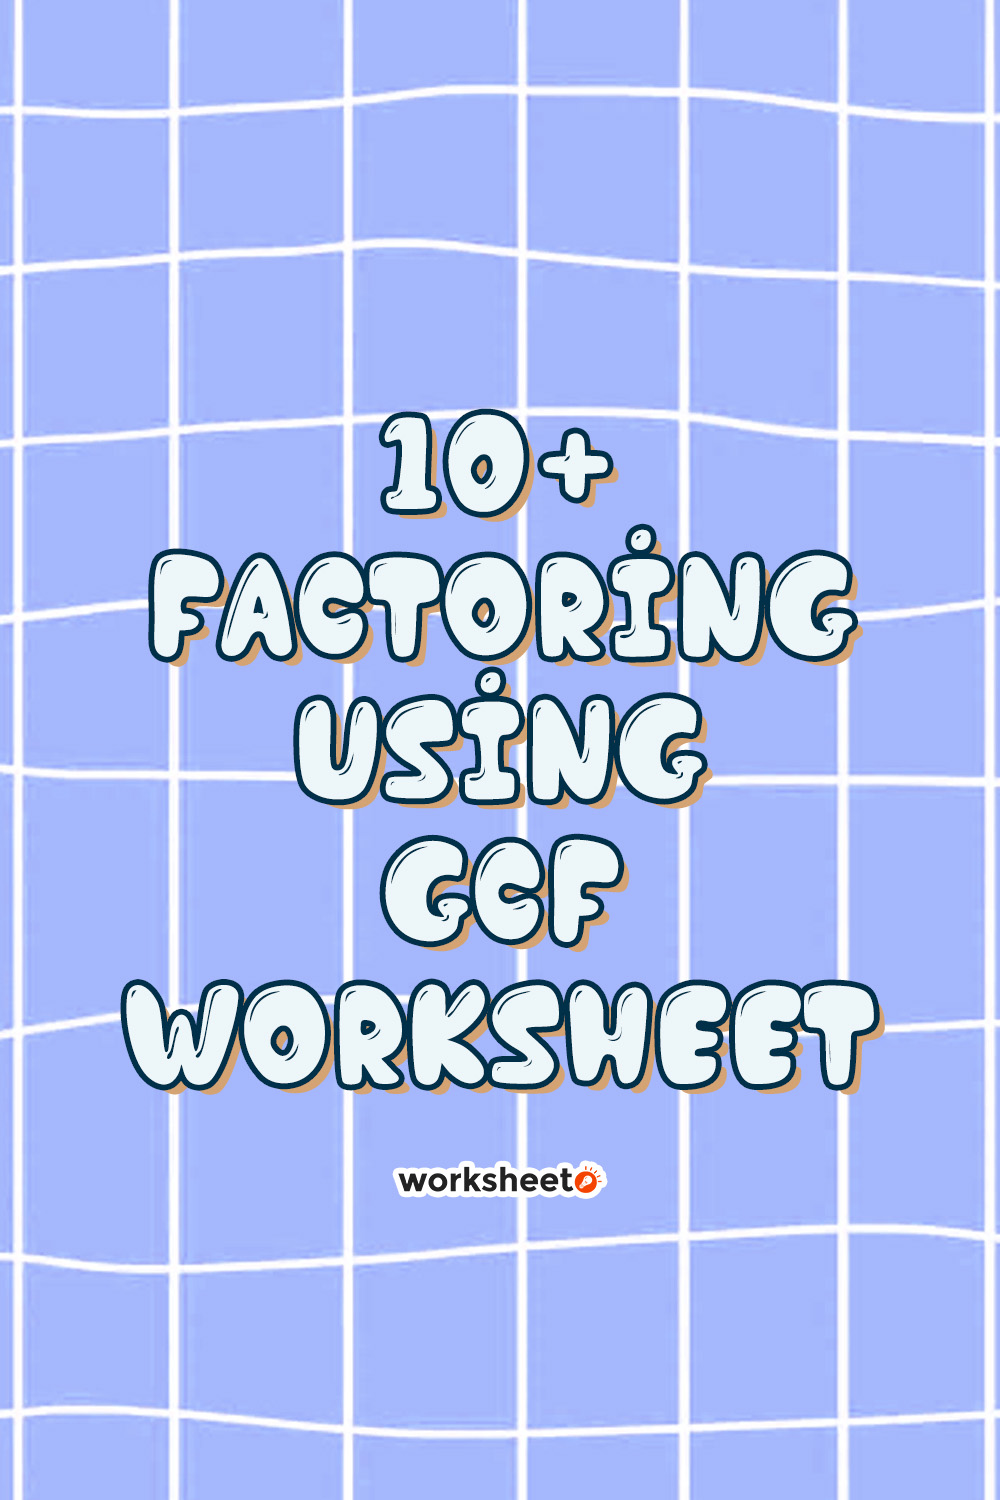 Factoring Using GCF Worksheet.pdf